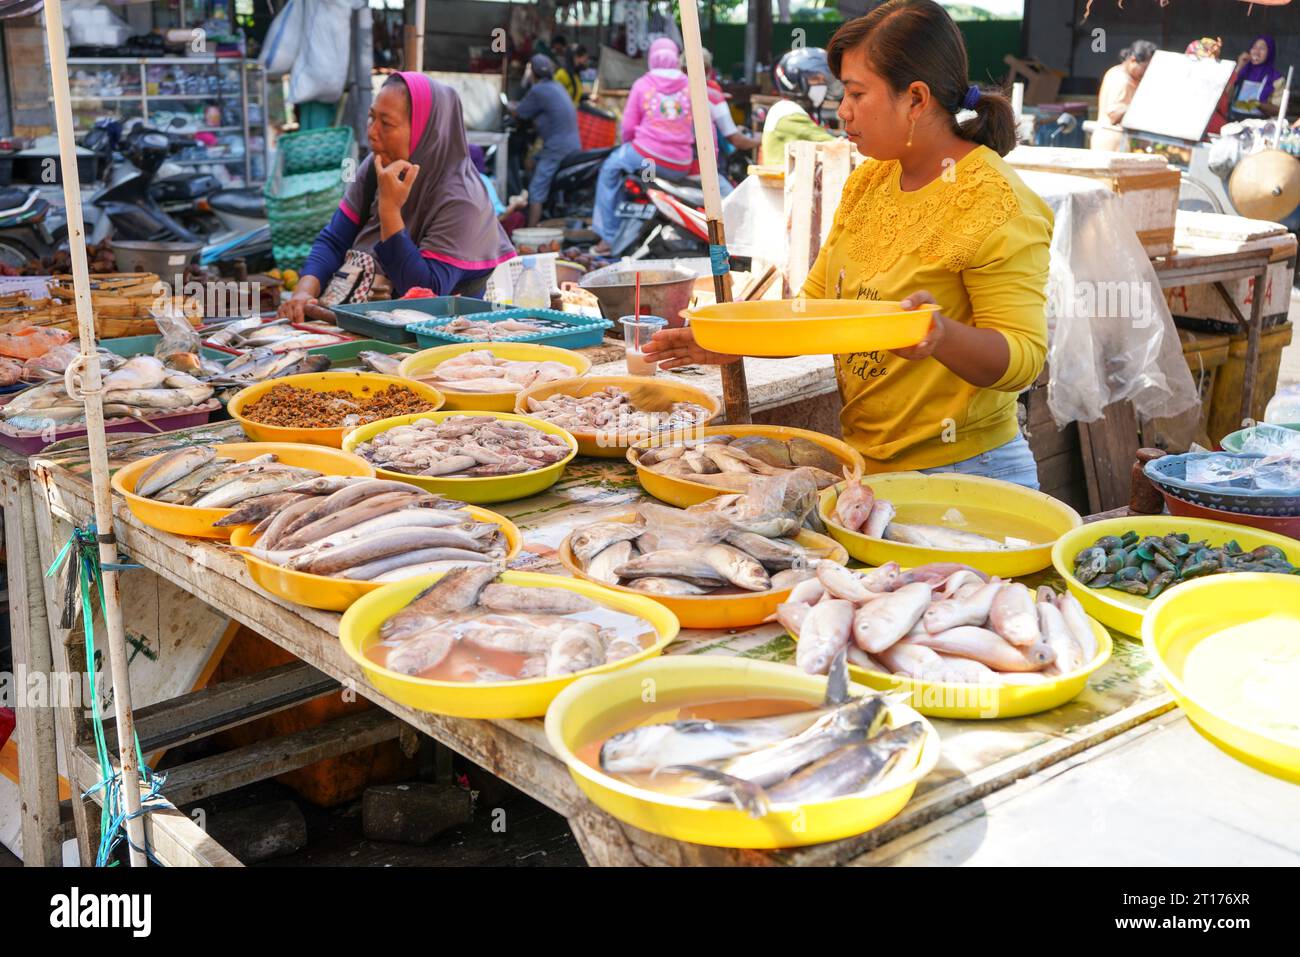 Situazione tradizionale del mercato del pesce. I venditori di pesce visti stanno negoziando prezzi con potenziali acquirenti. Un mercato del pesce è un mercato del pesce. Foto Stock